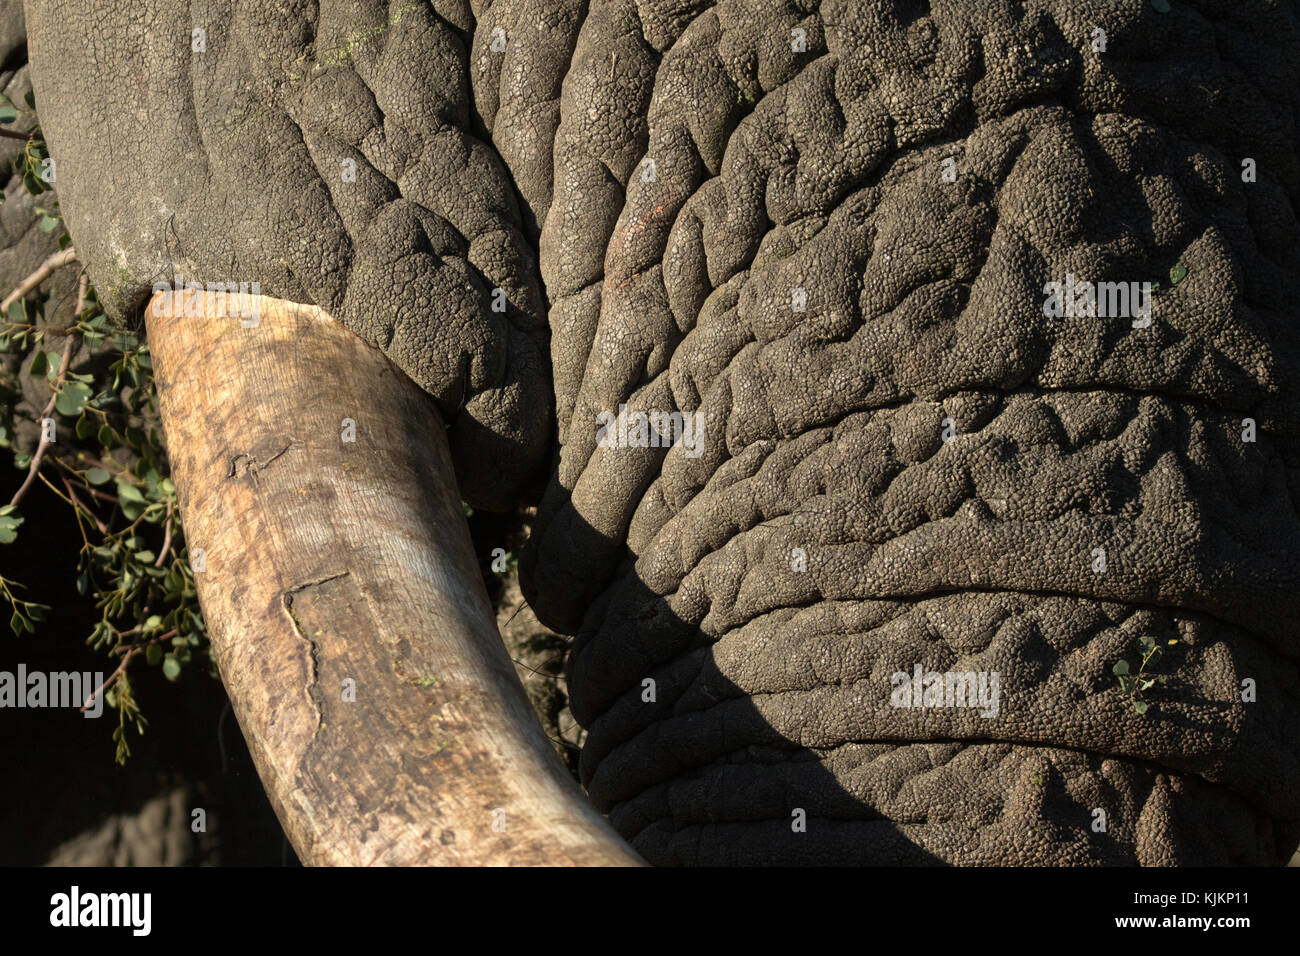 Krüger National Park. Afrikanischer Elefant (Loxodonta africana). Nahaufnahme der Stamm und die Stosszähne. Südafrika. Stockfoto